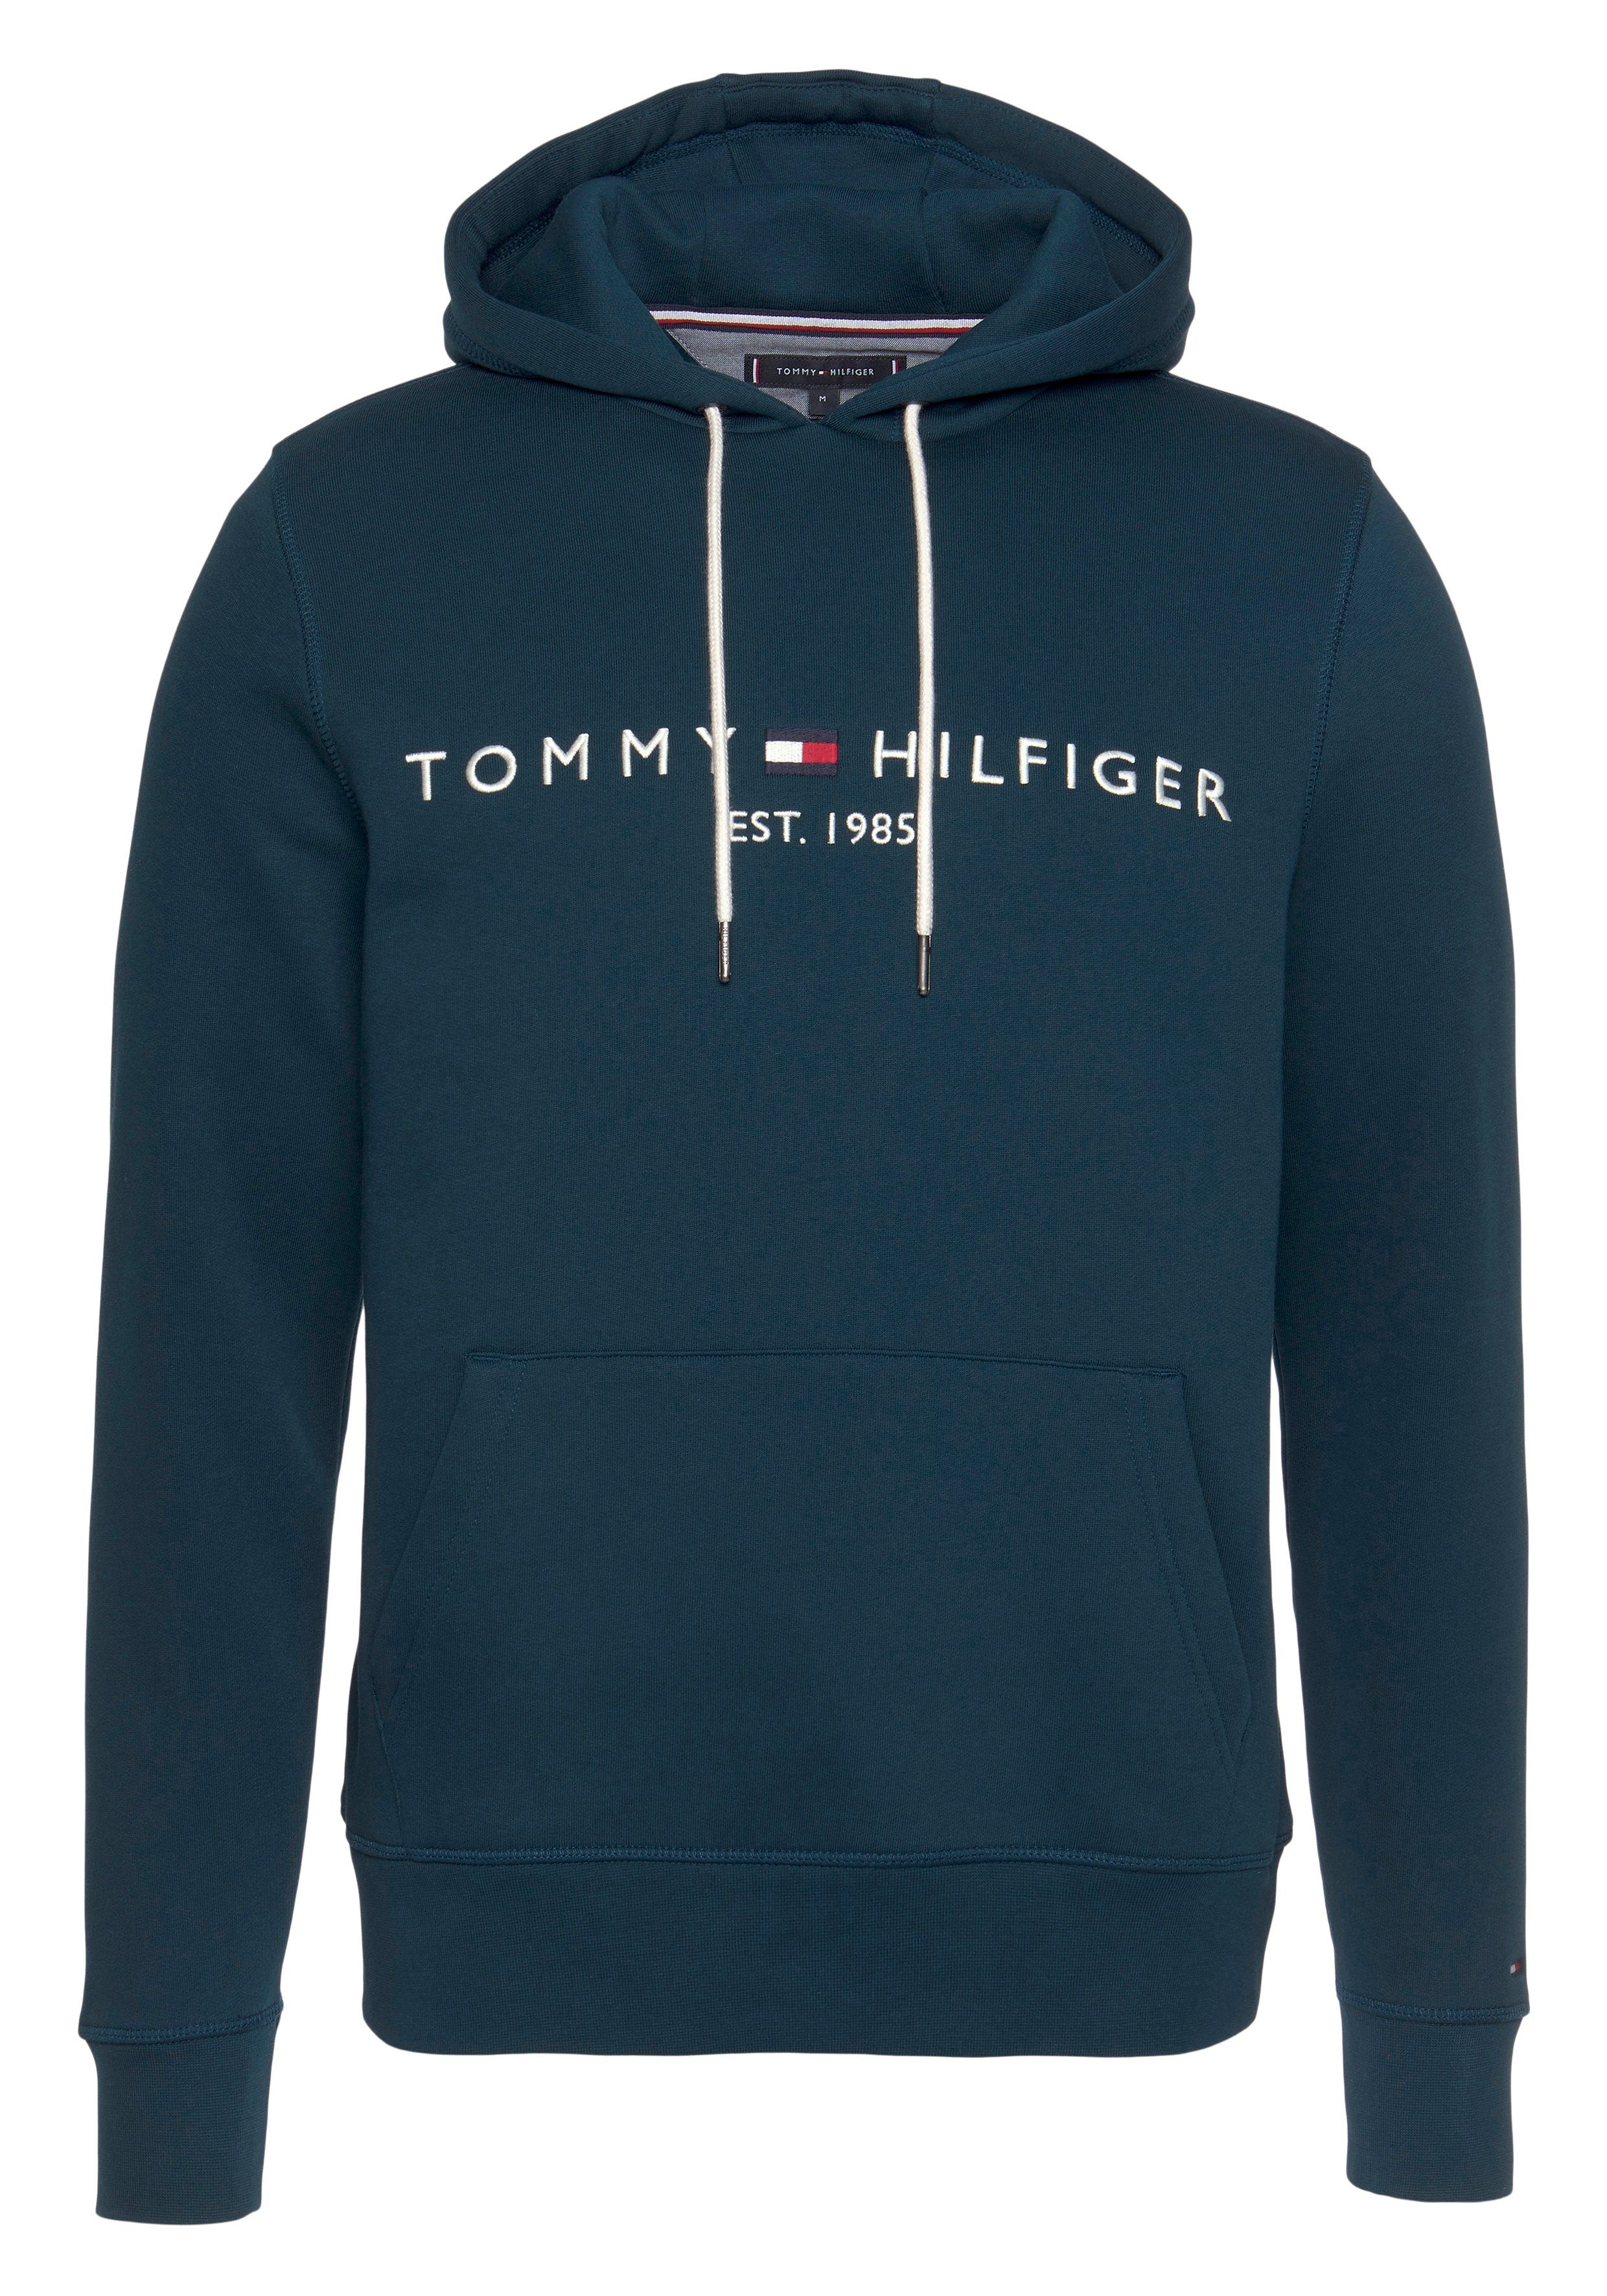 Tommy Hilfiger SALE & Outlet » günstig & reduziert | OTTO